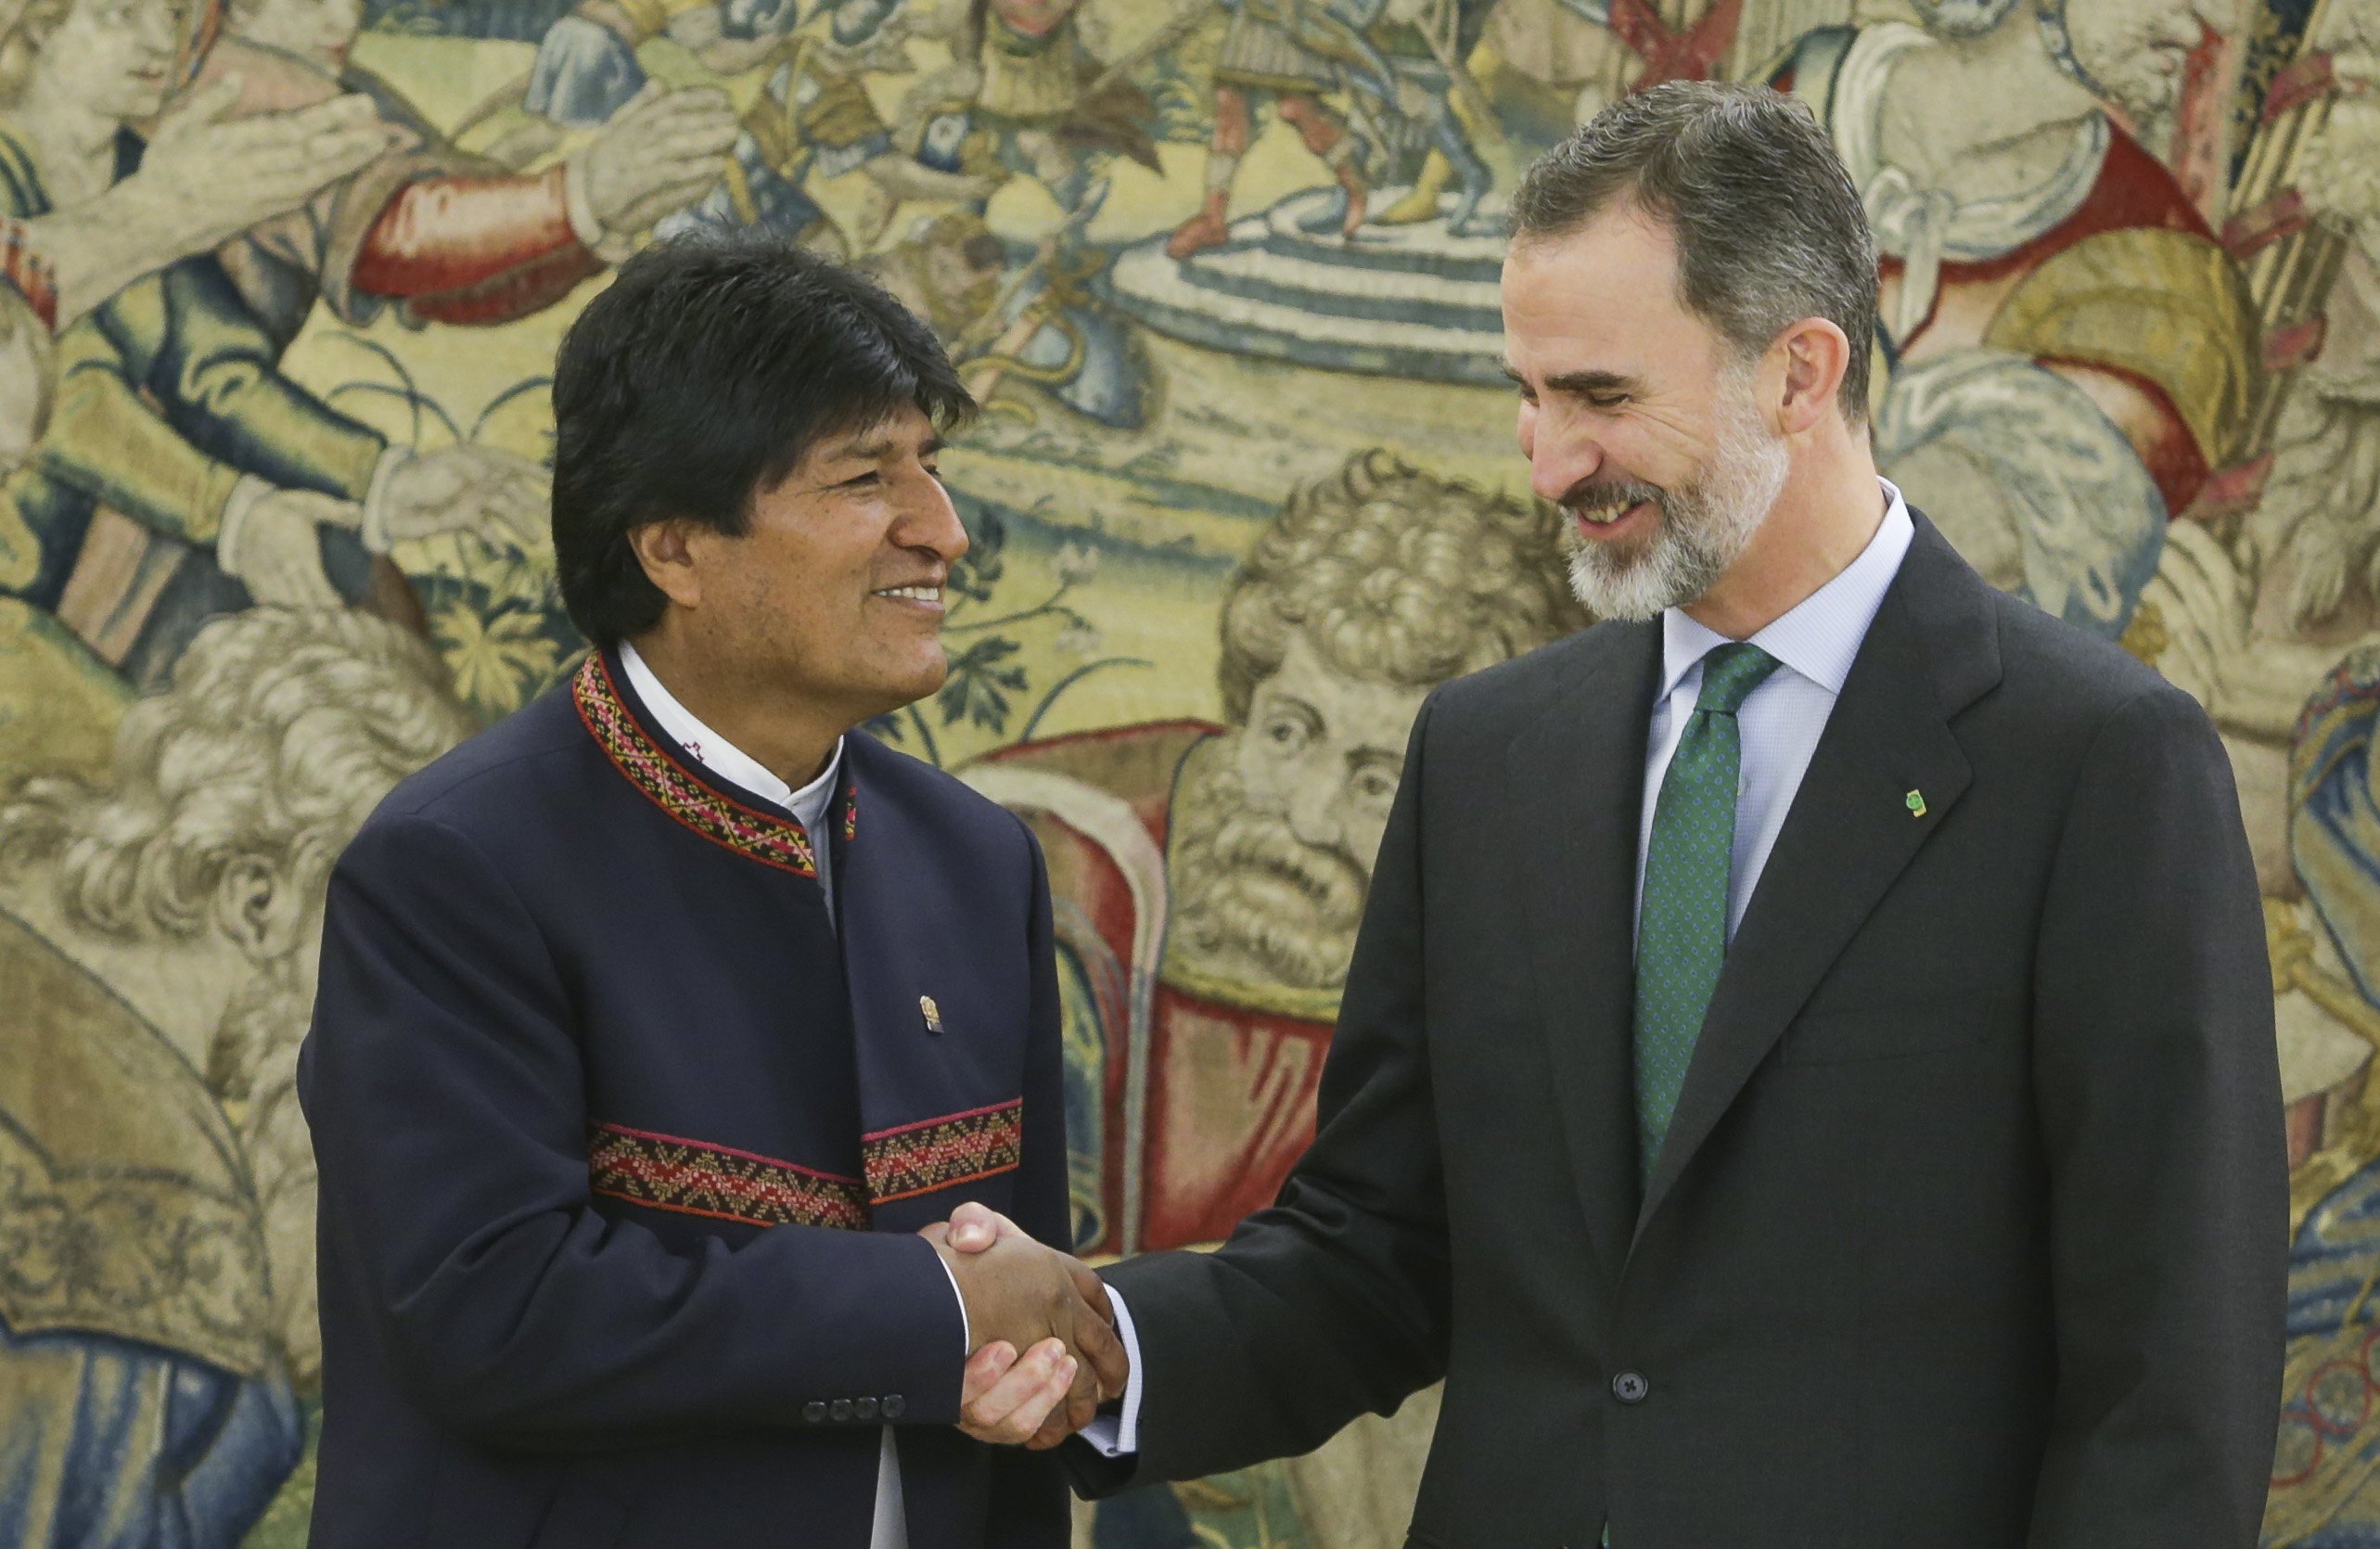 Duelo de hipocresía entre Felipe VI y Evo Morales en la Zarzuela